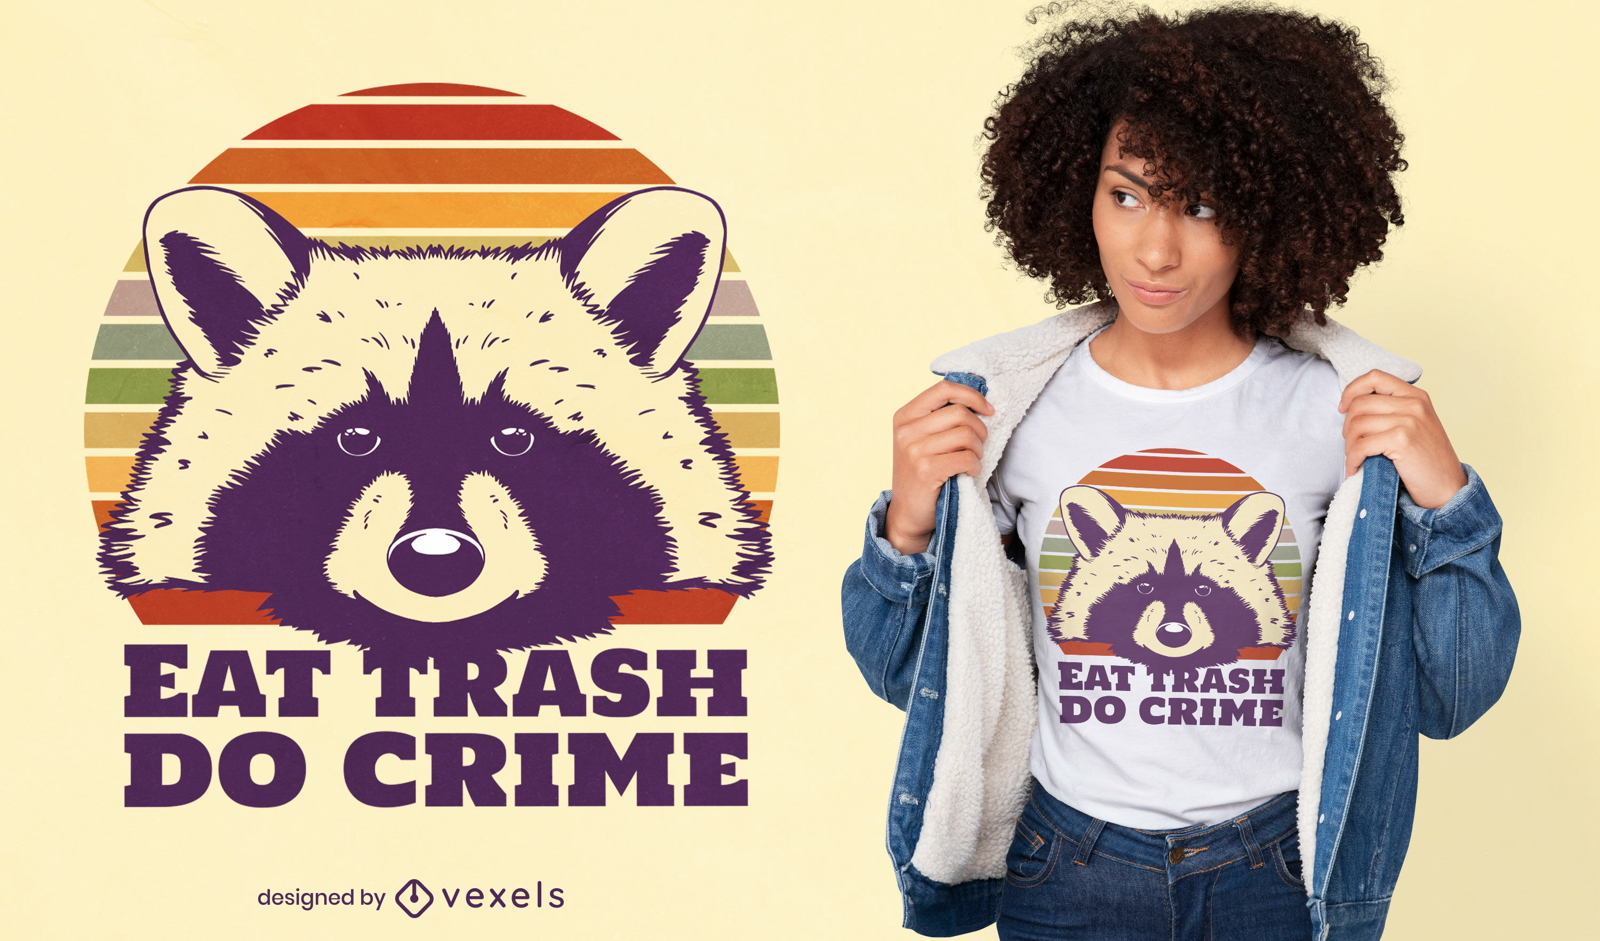 Coma lixo faça crime design de t-shirt de guaxinim engraçado